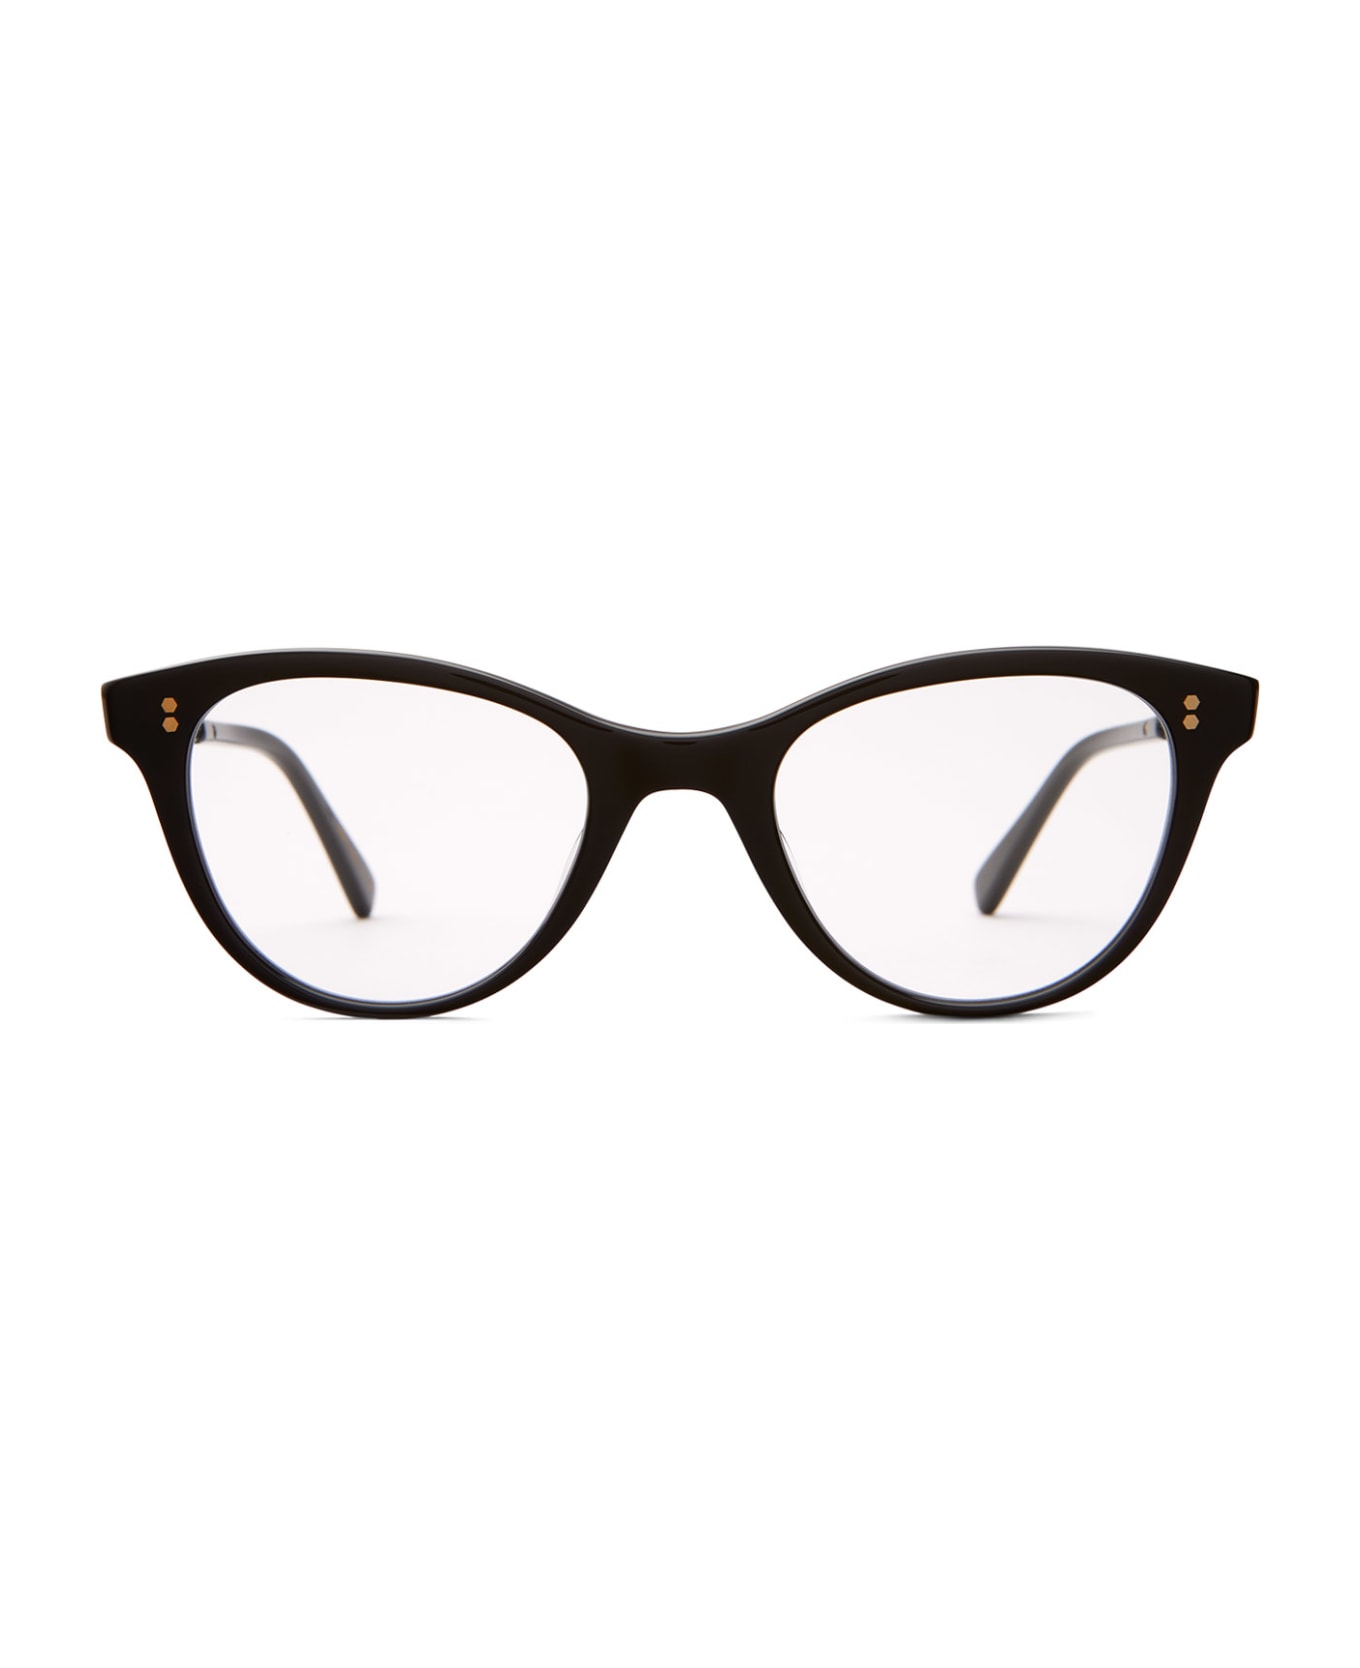 Mr. Leight Taylor C Black-12k White Gold Glasses - Black-12K White Gold アイウェア